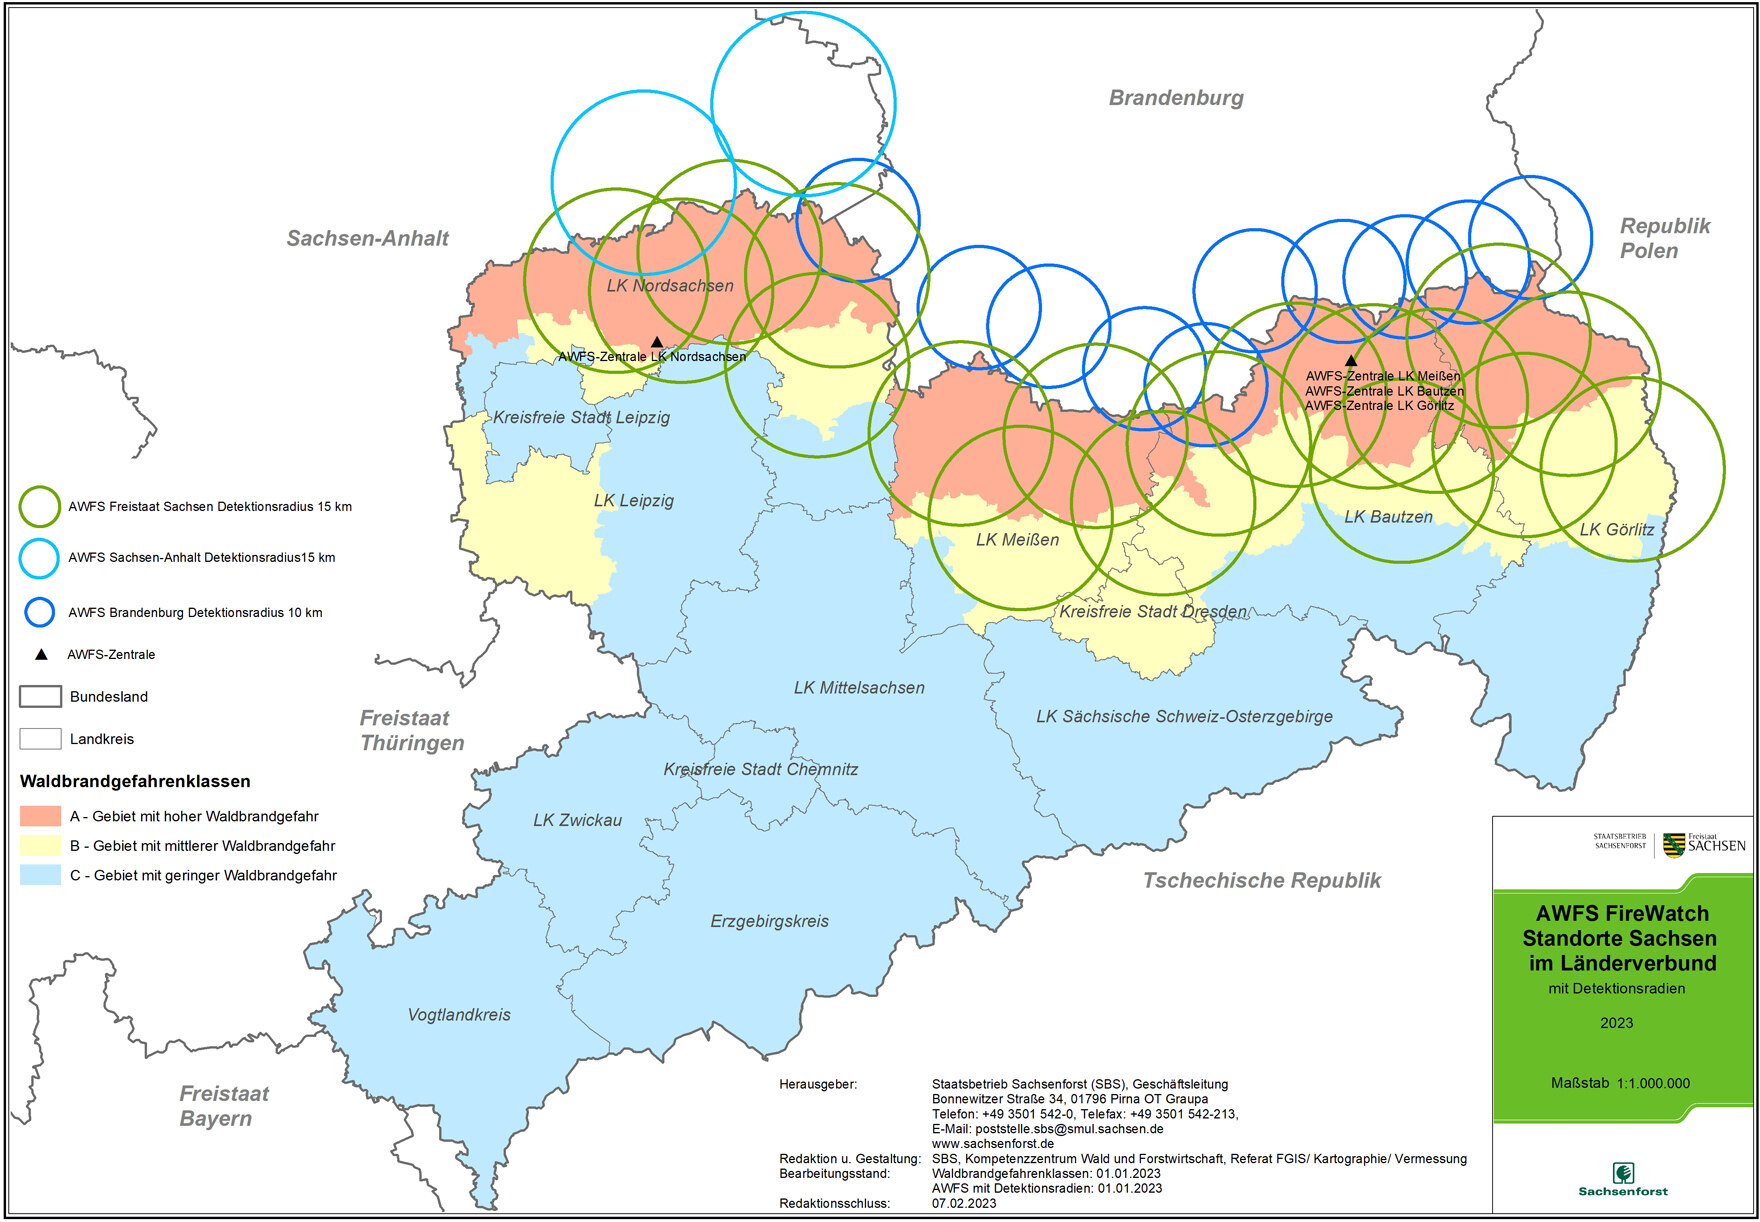 Karte von Sachsen mit eingezeichneten Standorten der FIREWATCH-Kameras.